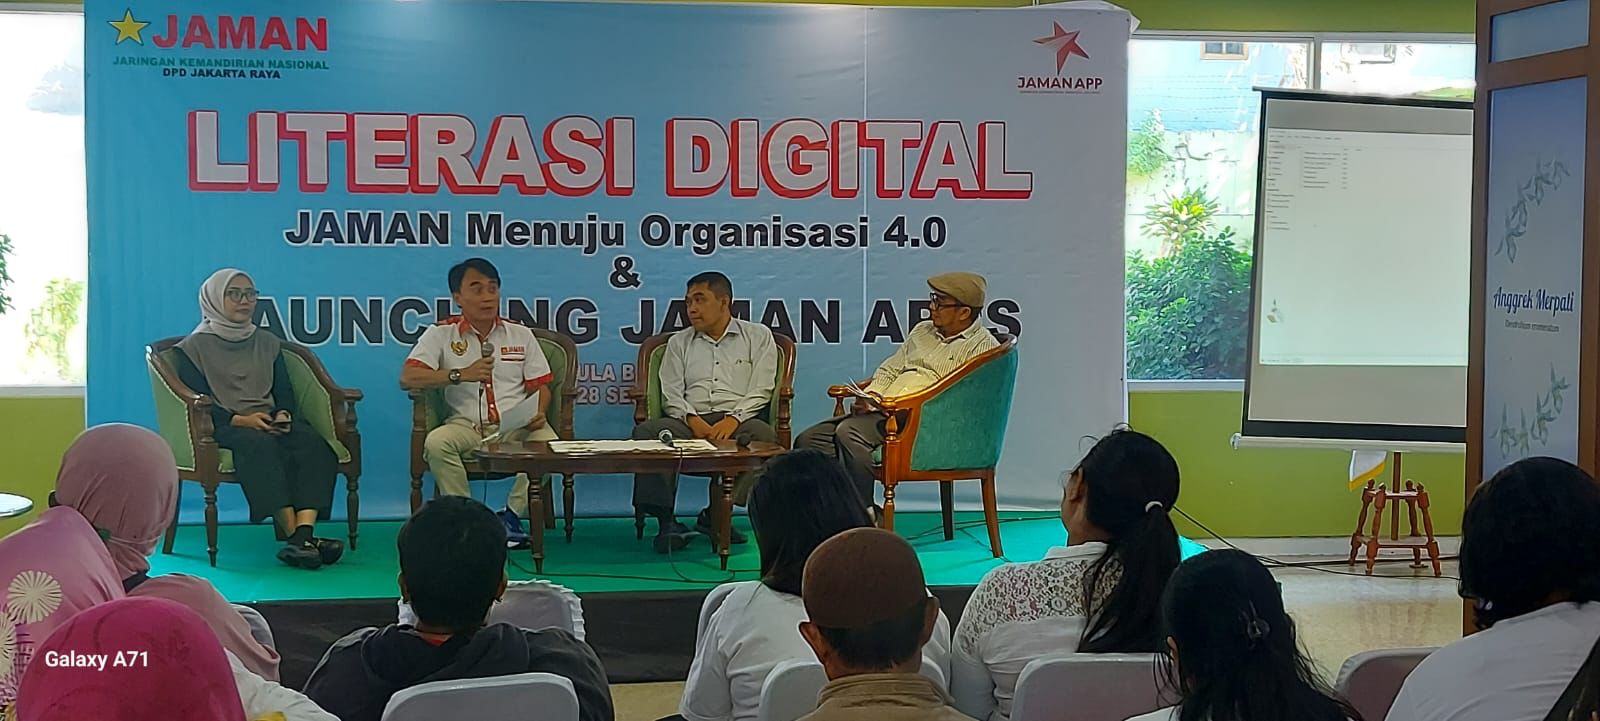 JAMAN Dituntut Berperan Aktif Mendorong Transformasi Digital Guna Mewujudkan Indonesia Emas 2045